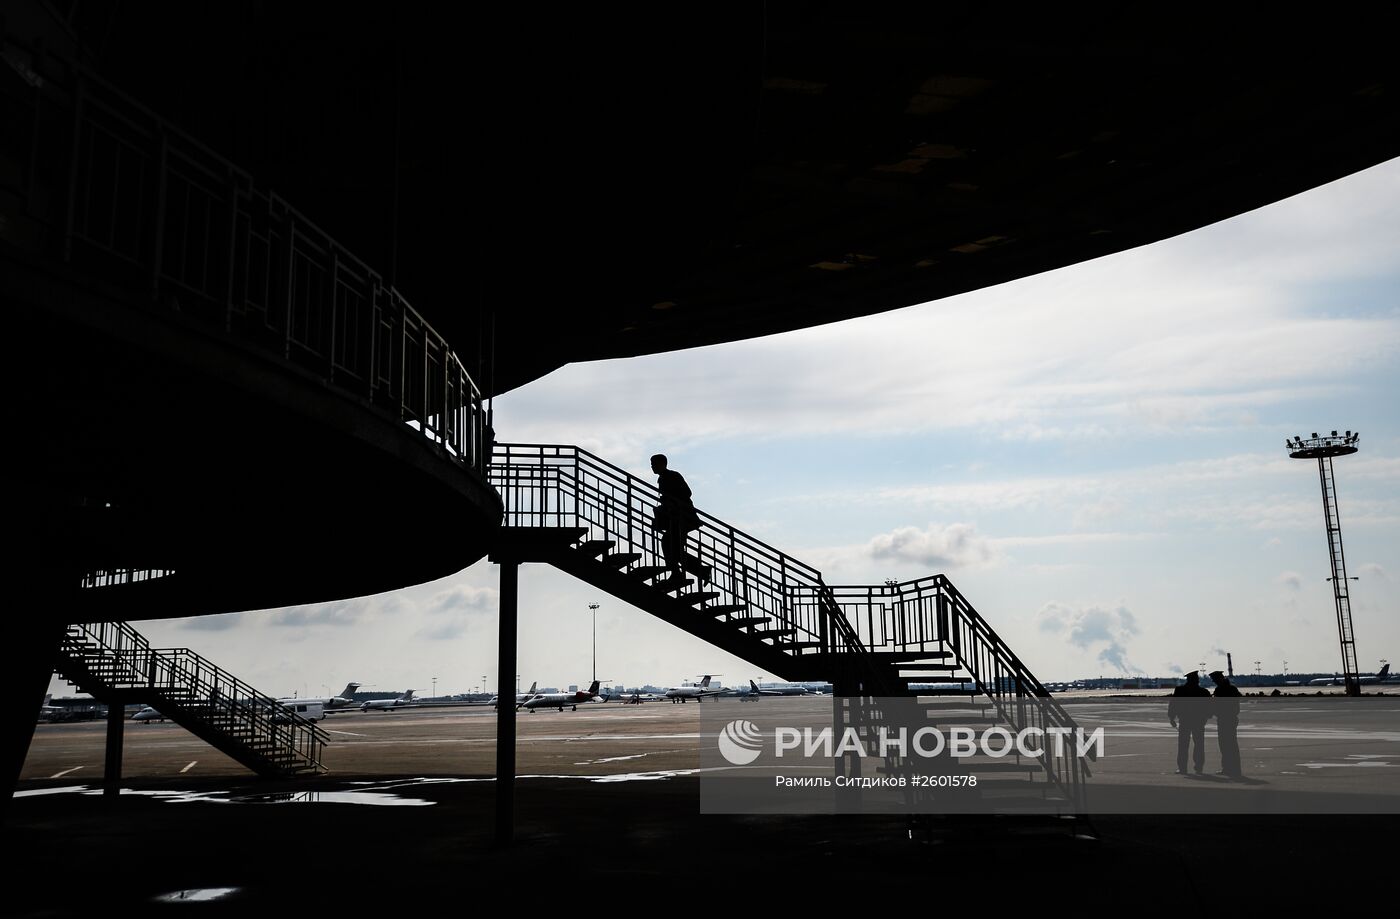 Подготовка к сносу терминала "B" московского аэропорта "Шереметьево"